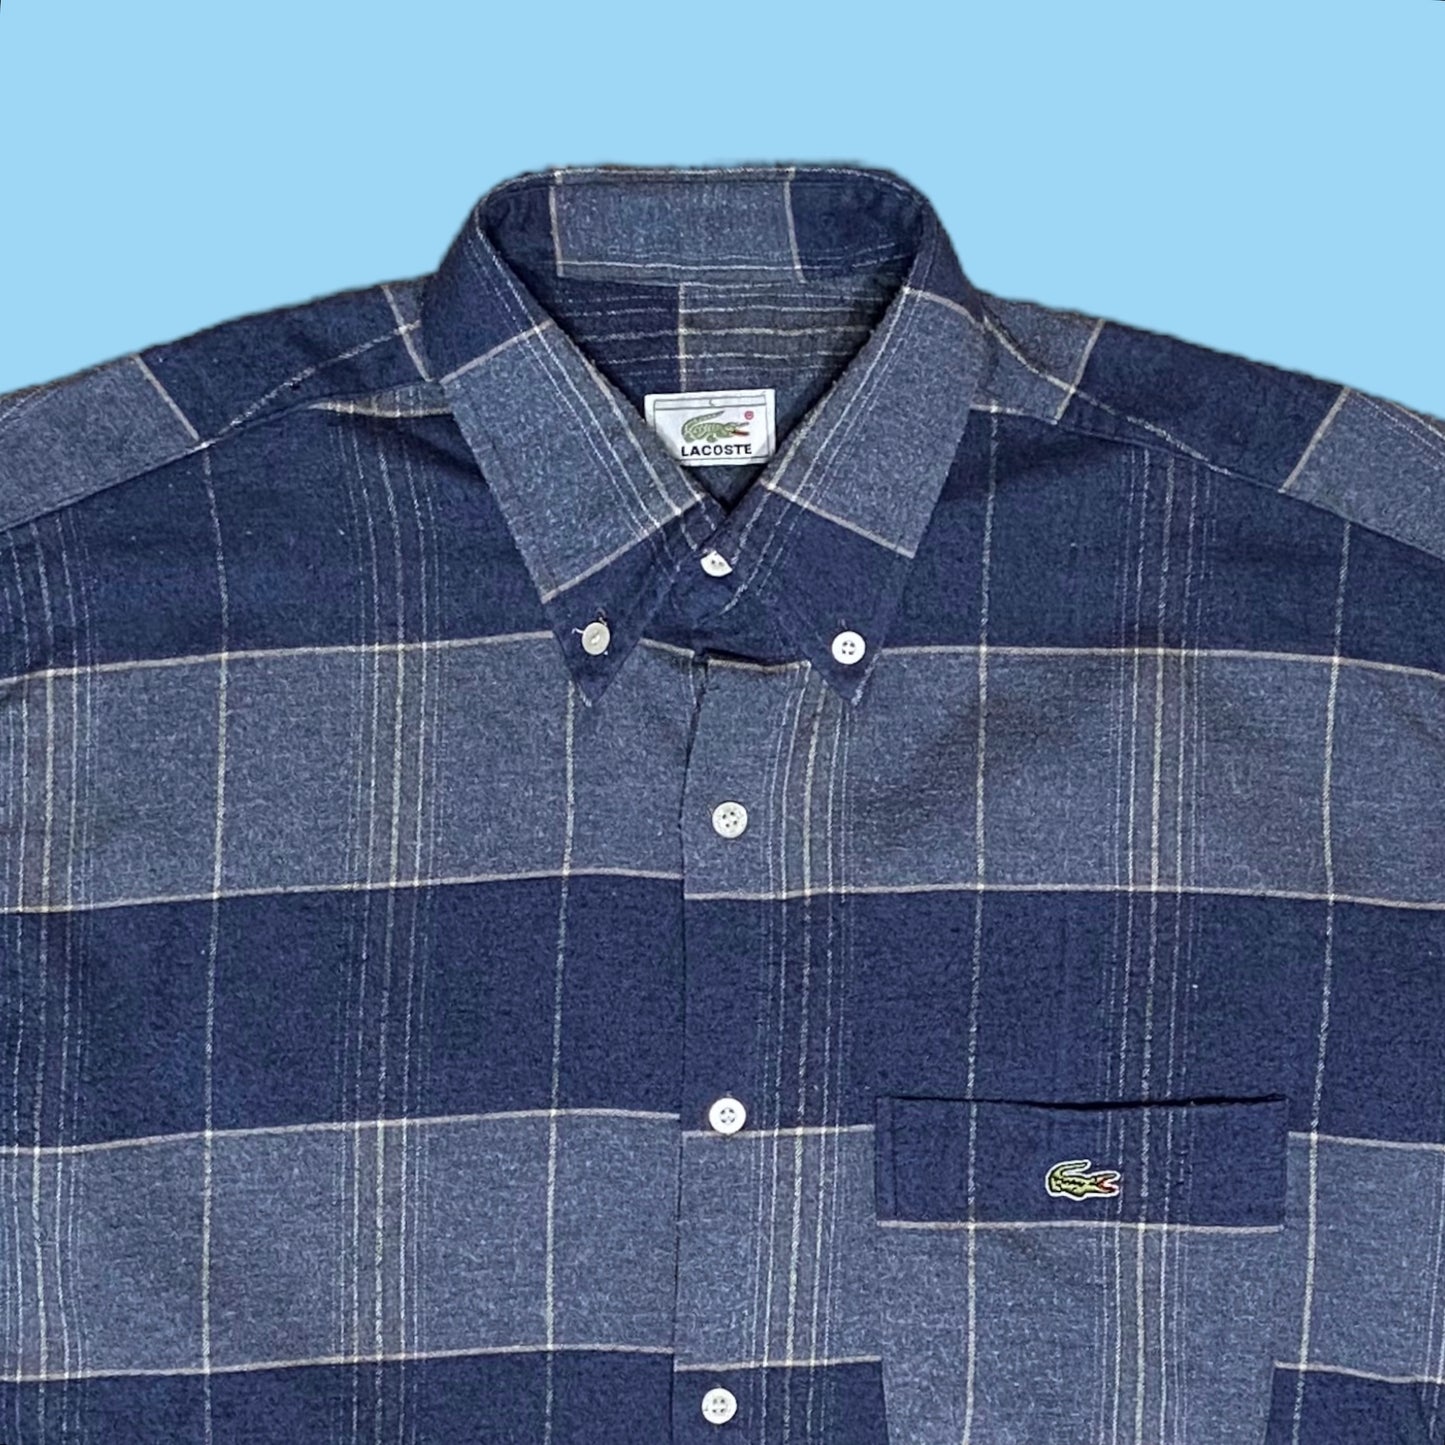 Vintage Lacoste flannel shirt - L